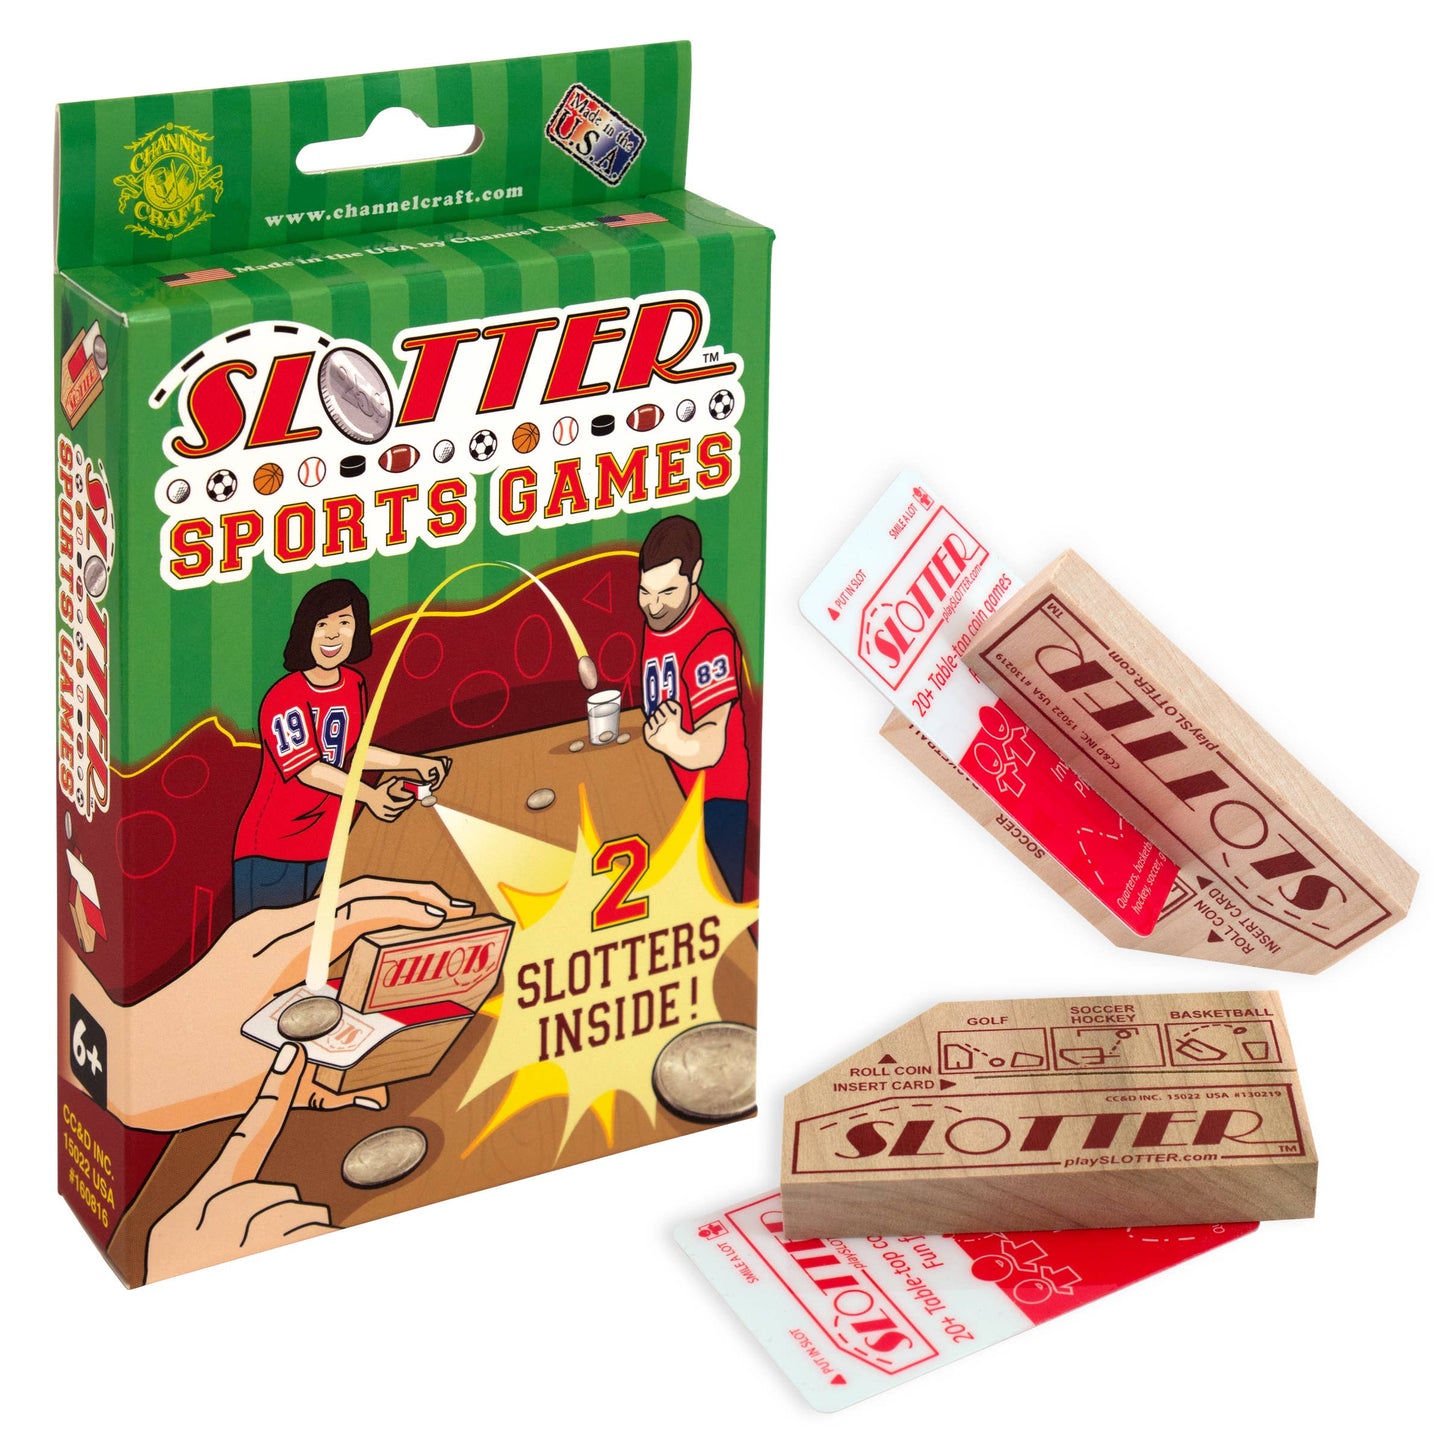 SLOTTER Sports Games Box